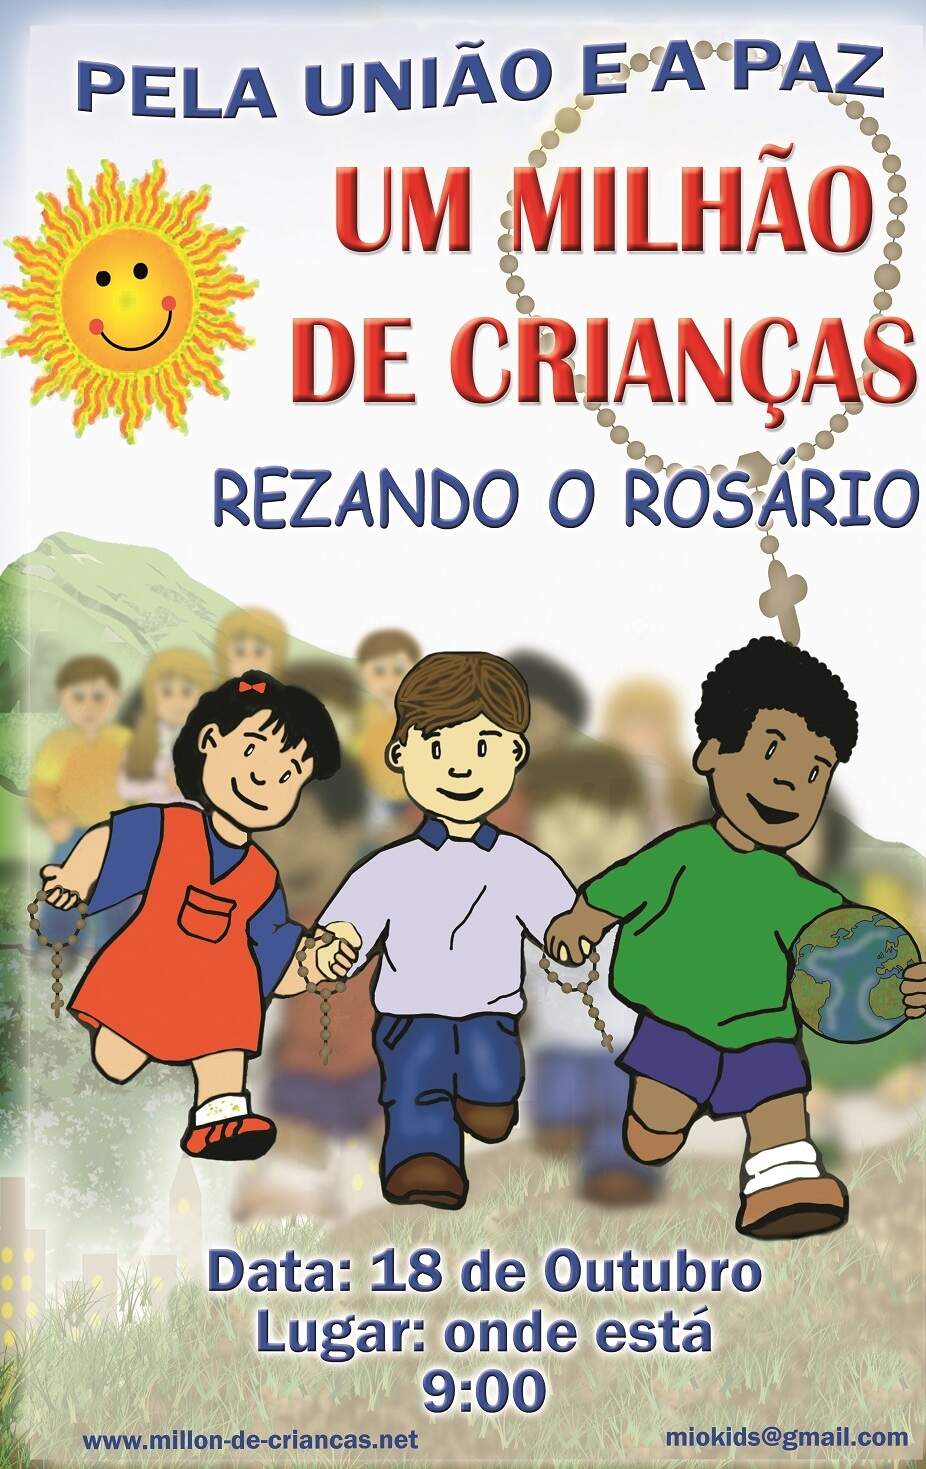 um_milhao_de_criancas_rezando_o_rosario_site